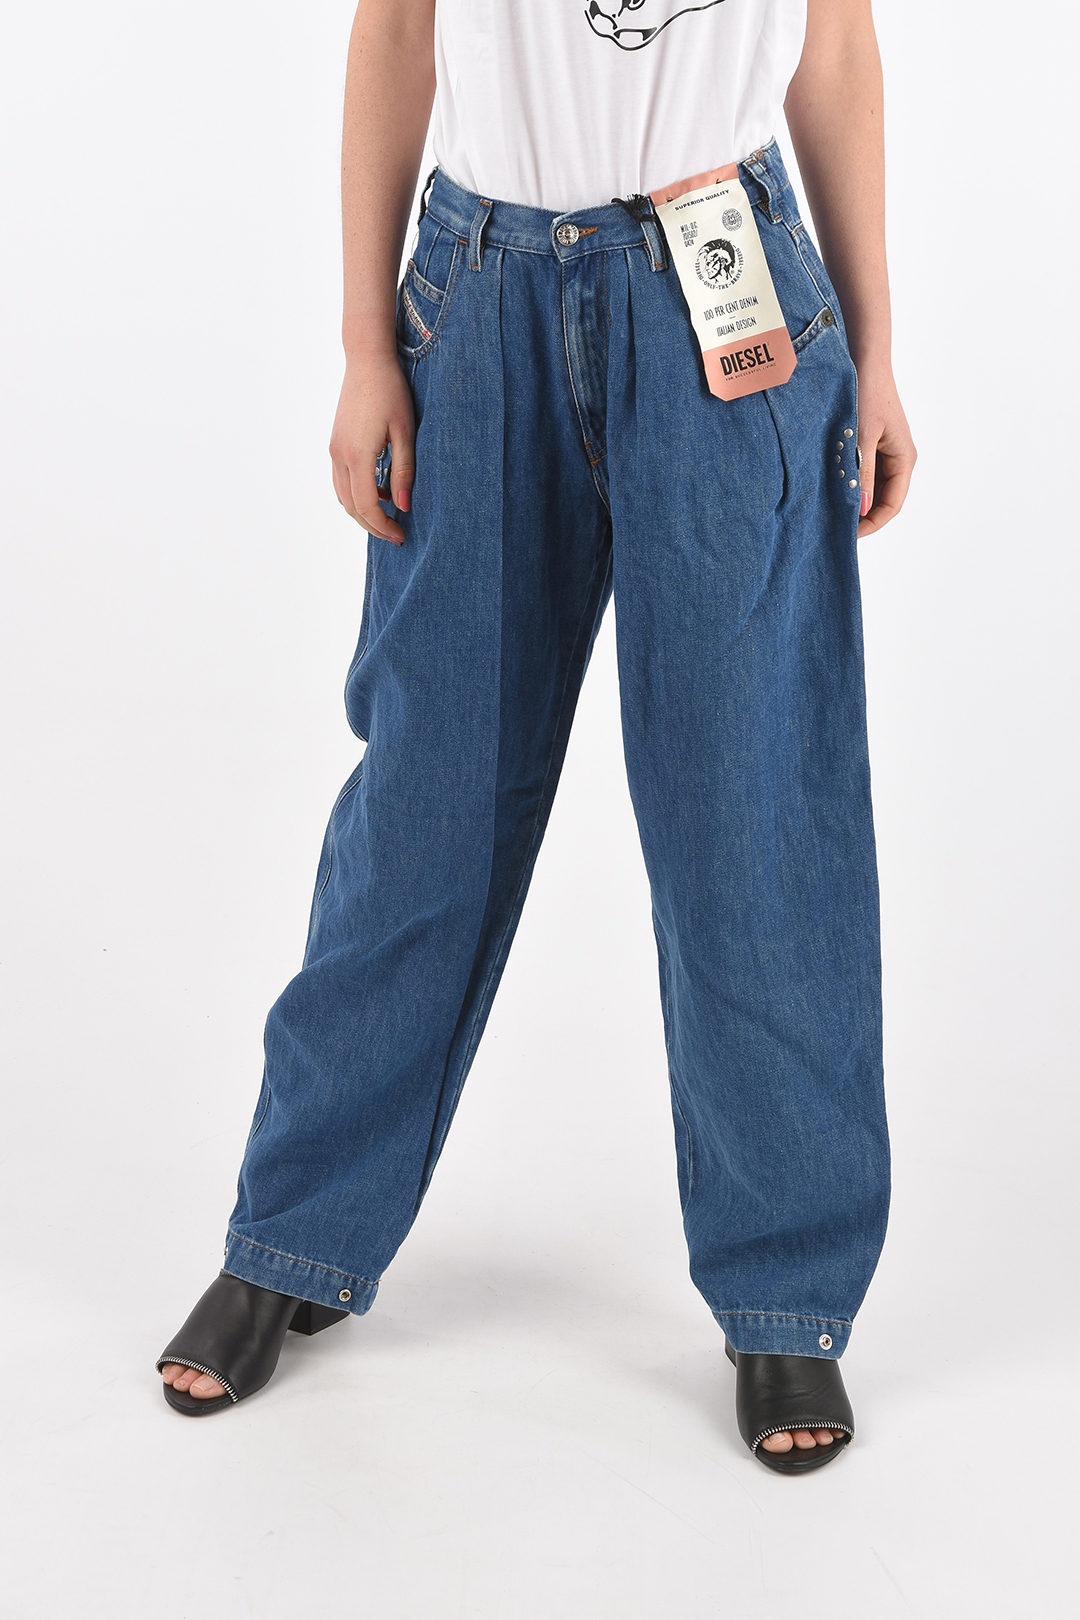 Diesel double pleat D-CONCIAS-SP4 baggy jeans L.32 women - Glamood Outlet